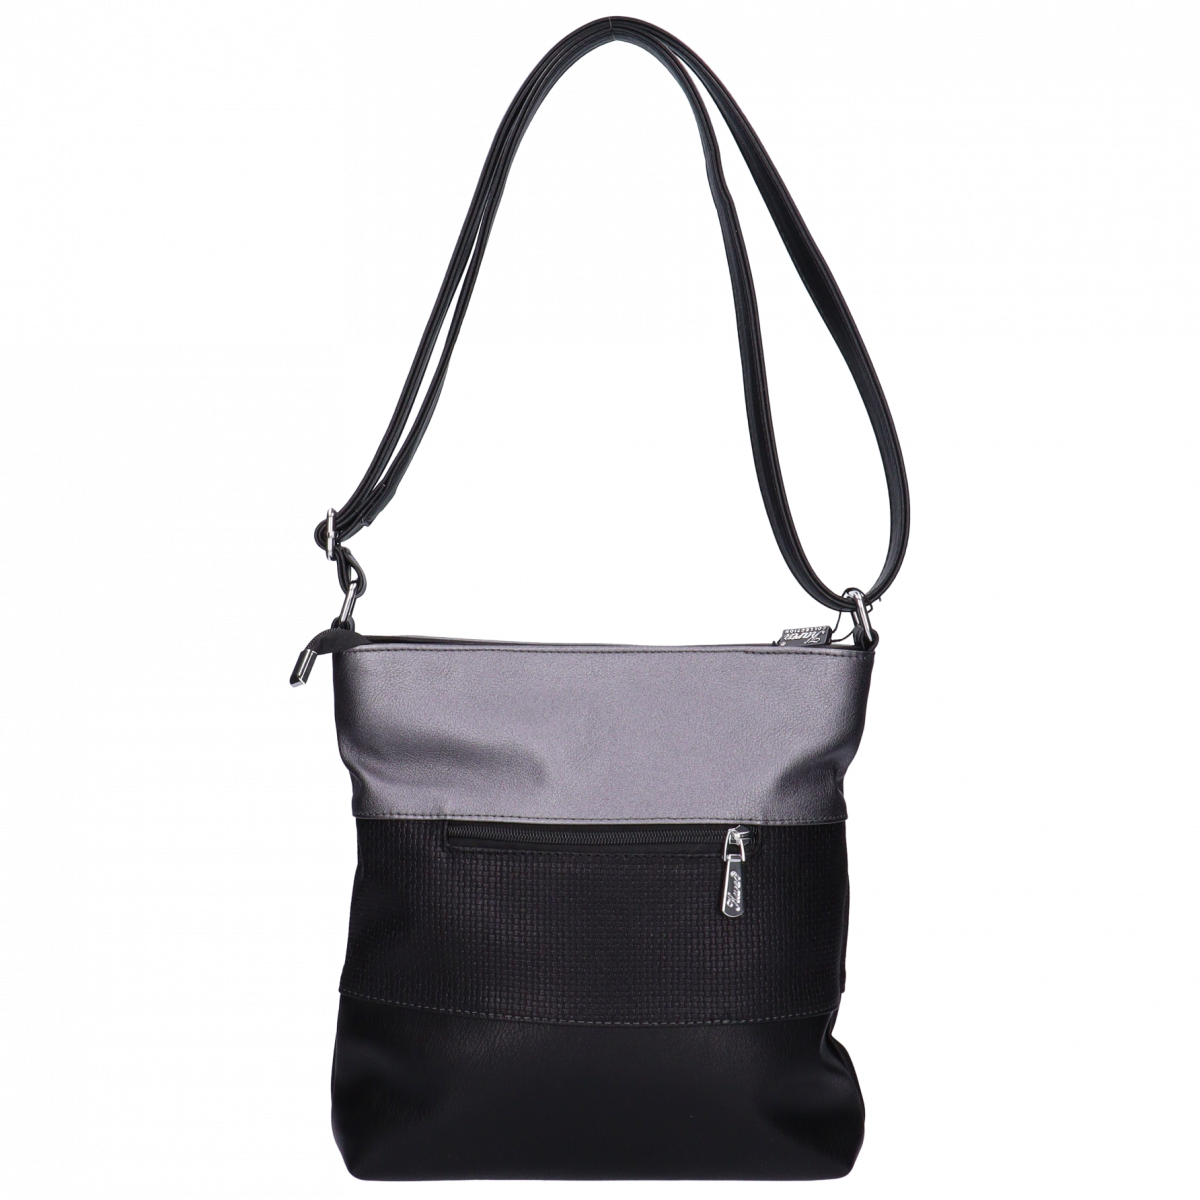 Karen női oldal táska szürke- fekete fonott mintás